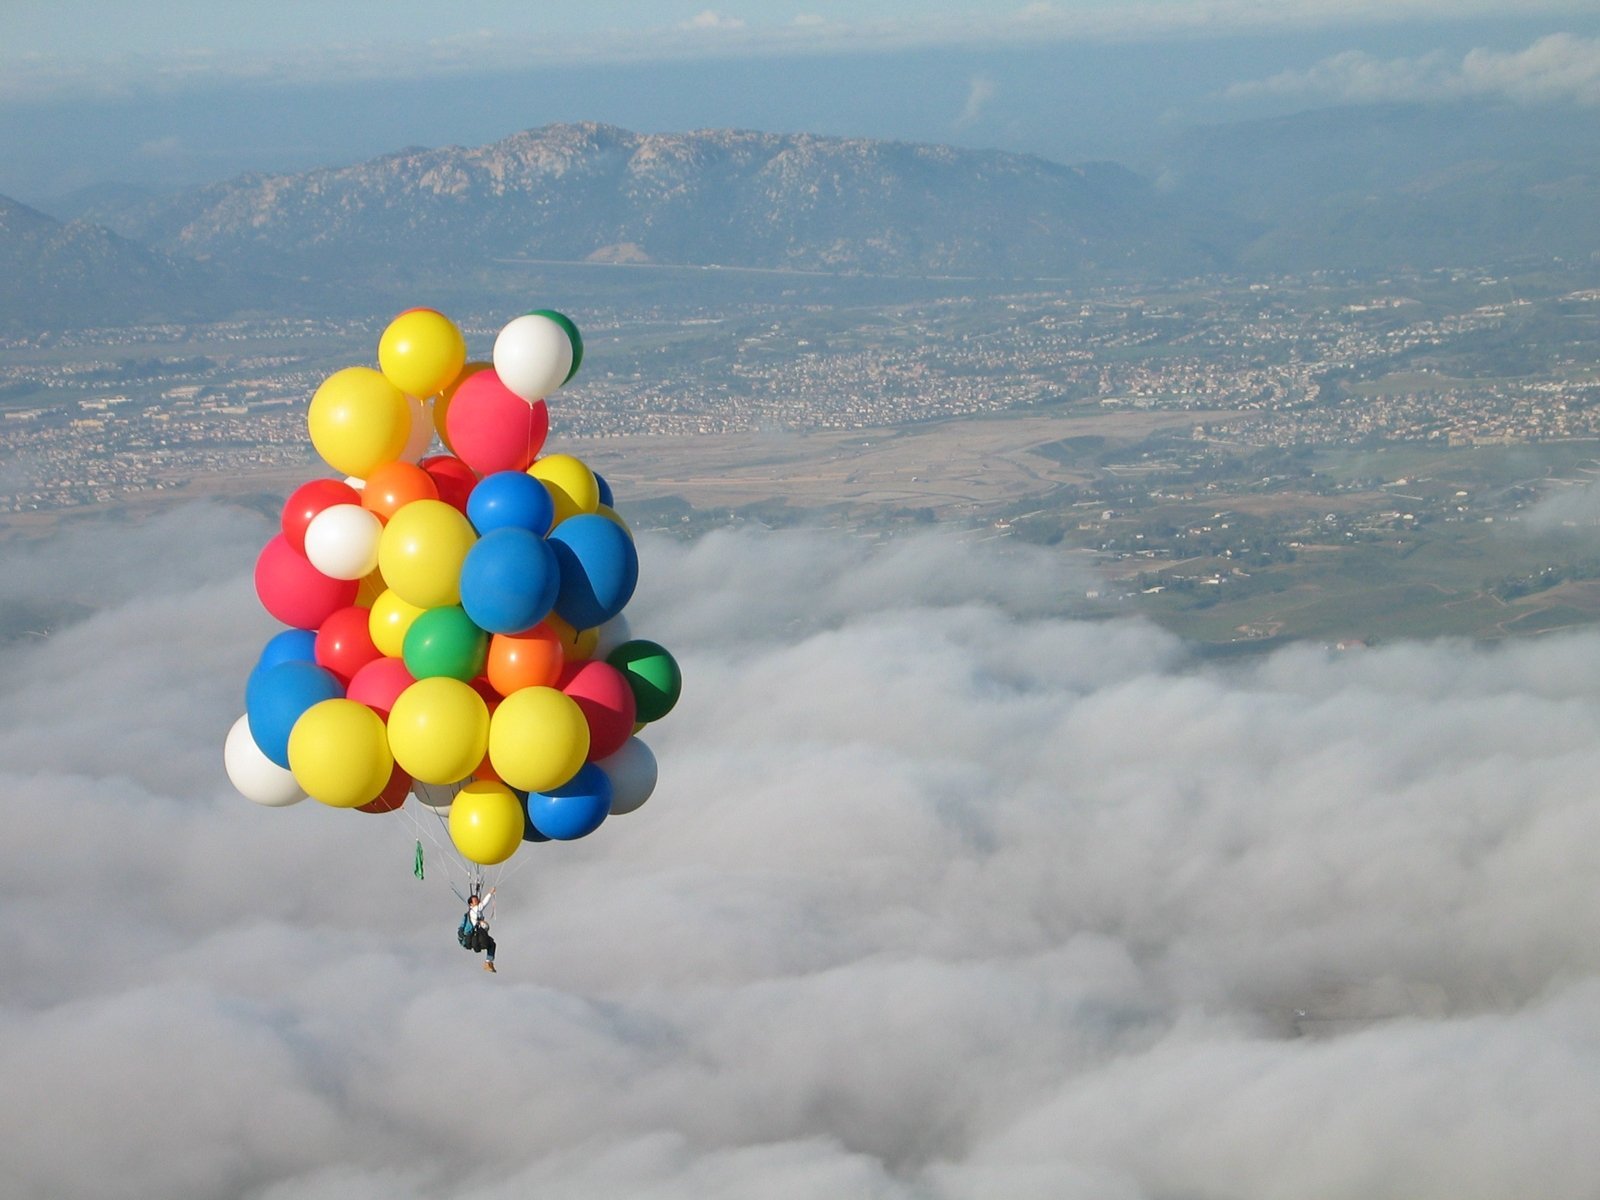 Описание воздушных шаров. Полет на воздушных шариках. Воздушный шарик. Шары воздушные в воздухе. Летающий воздушный шар.